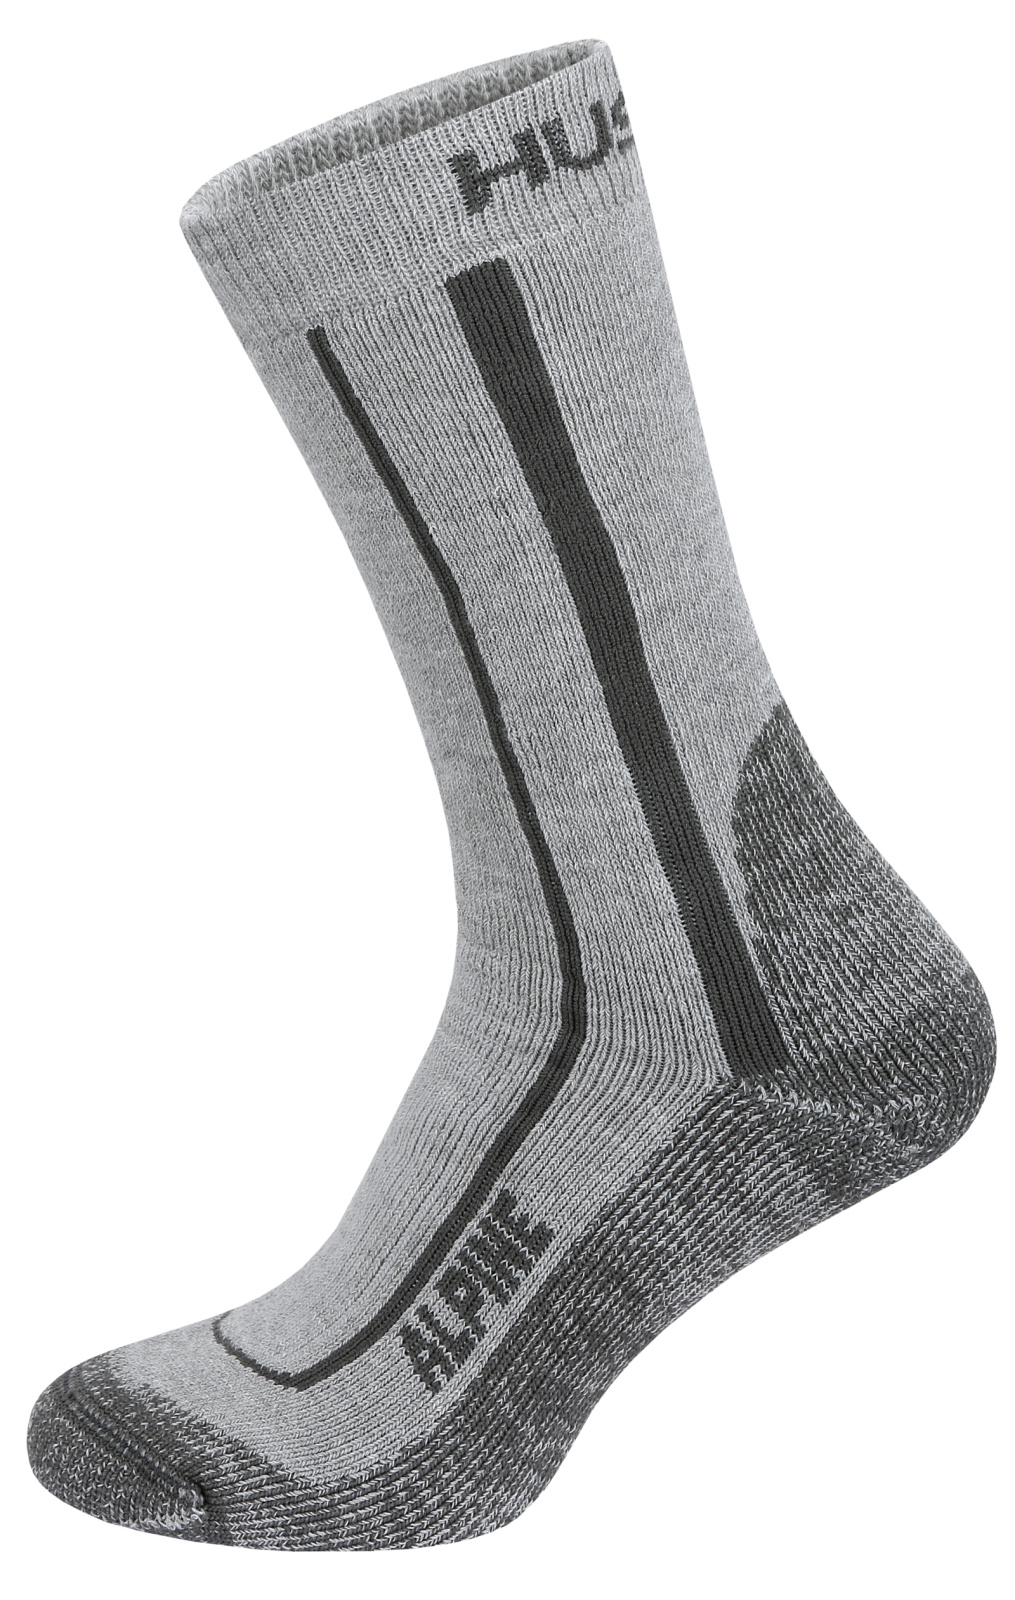 Husky Ponožky Alpine grey Velikost: M (36-40) ponožky